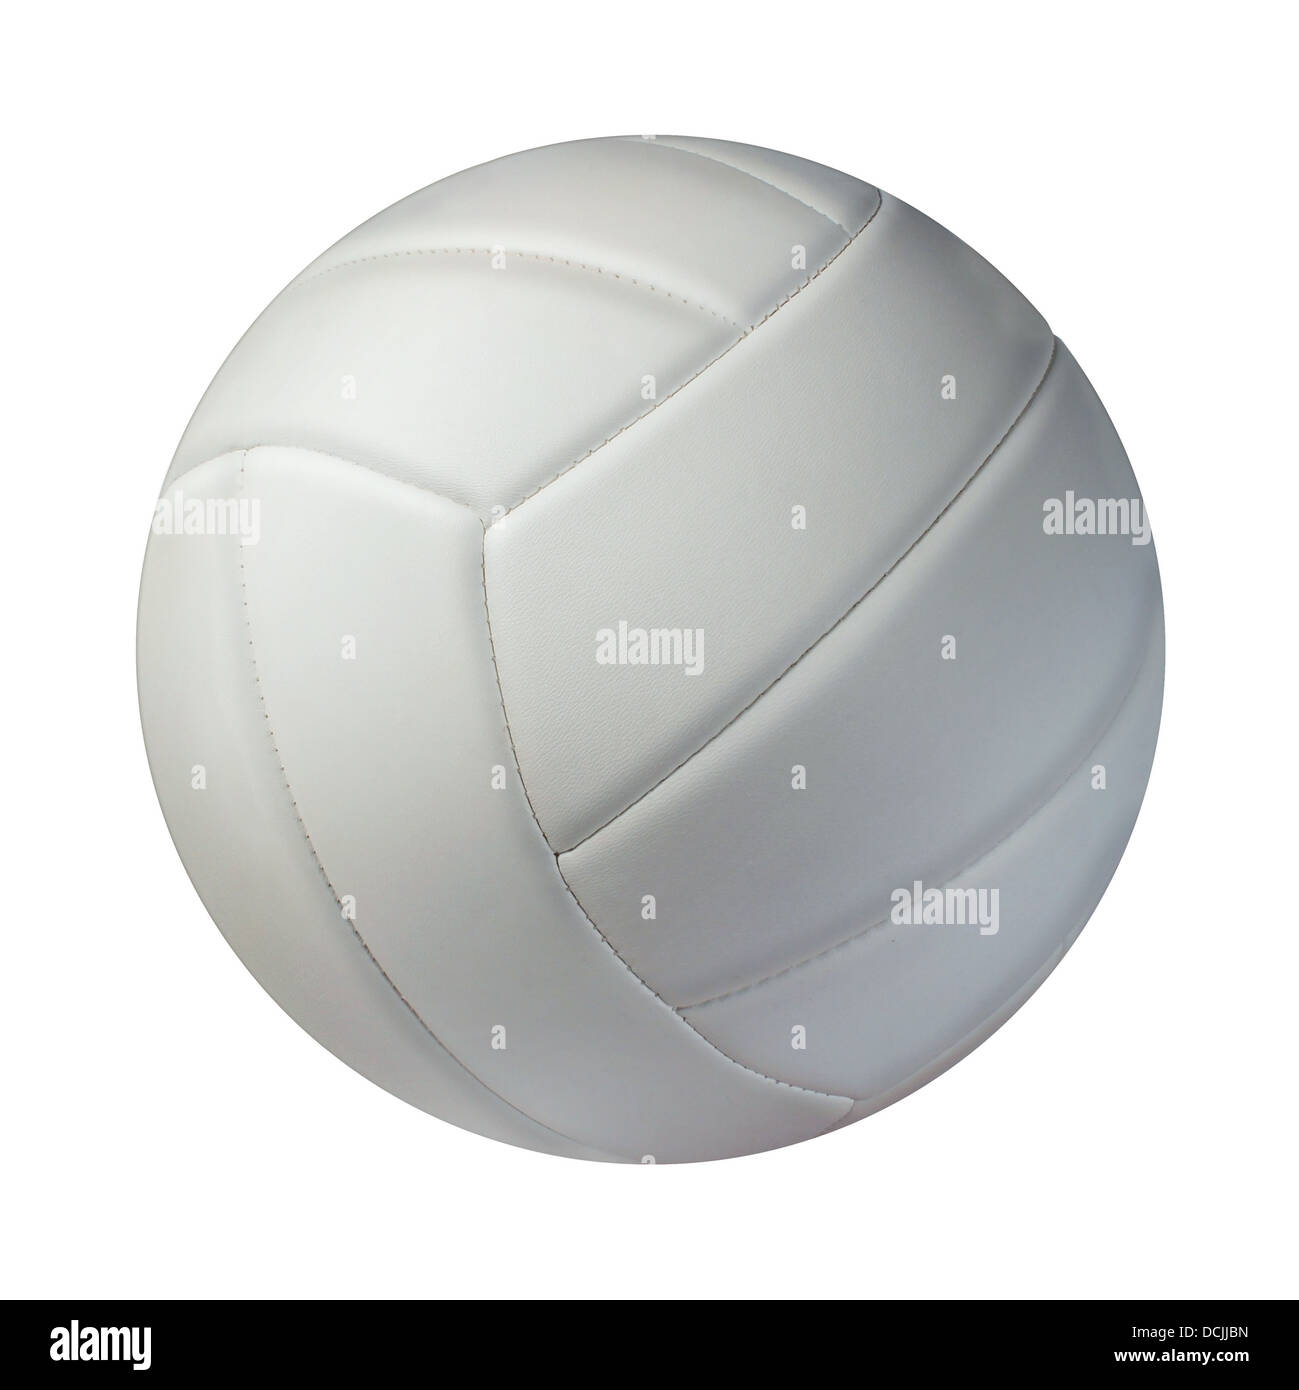 Volley-ball isolé sur un fond blanc comme un symbole de sports et de conditionnement physique d'une activité de loisirs l'équipe de jouer avec une balle en cuir Banque D'Images